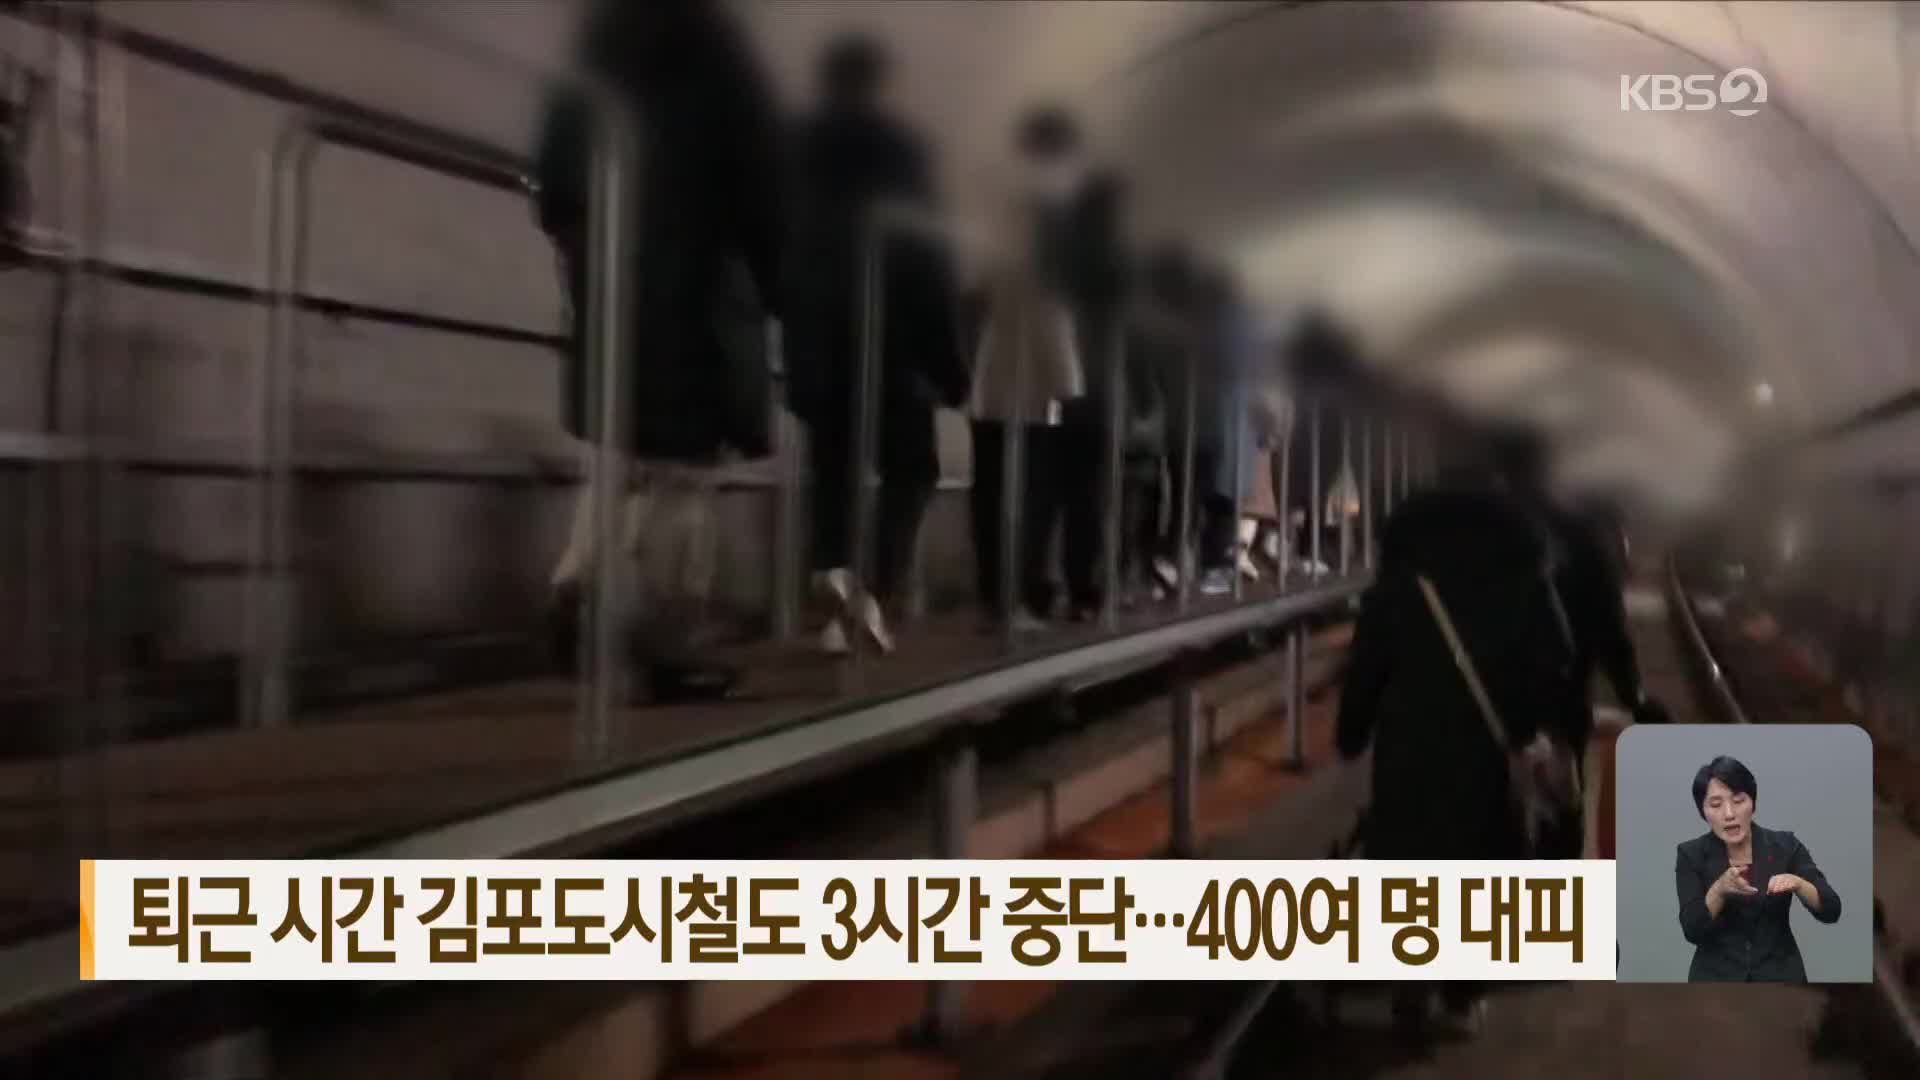 퇴근 시간 김포도시철도 3시간 중단…400여 명 대피